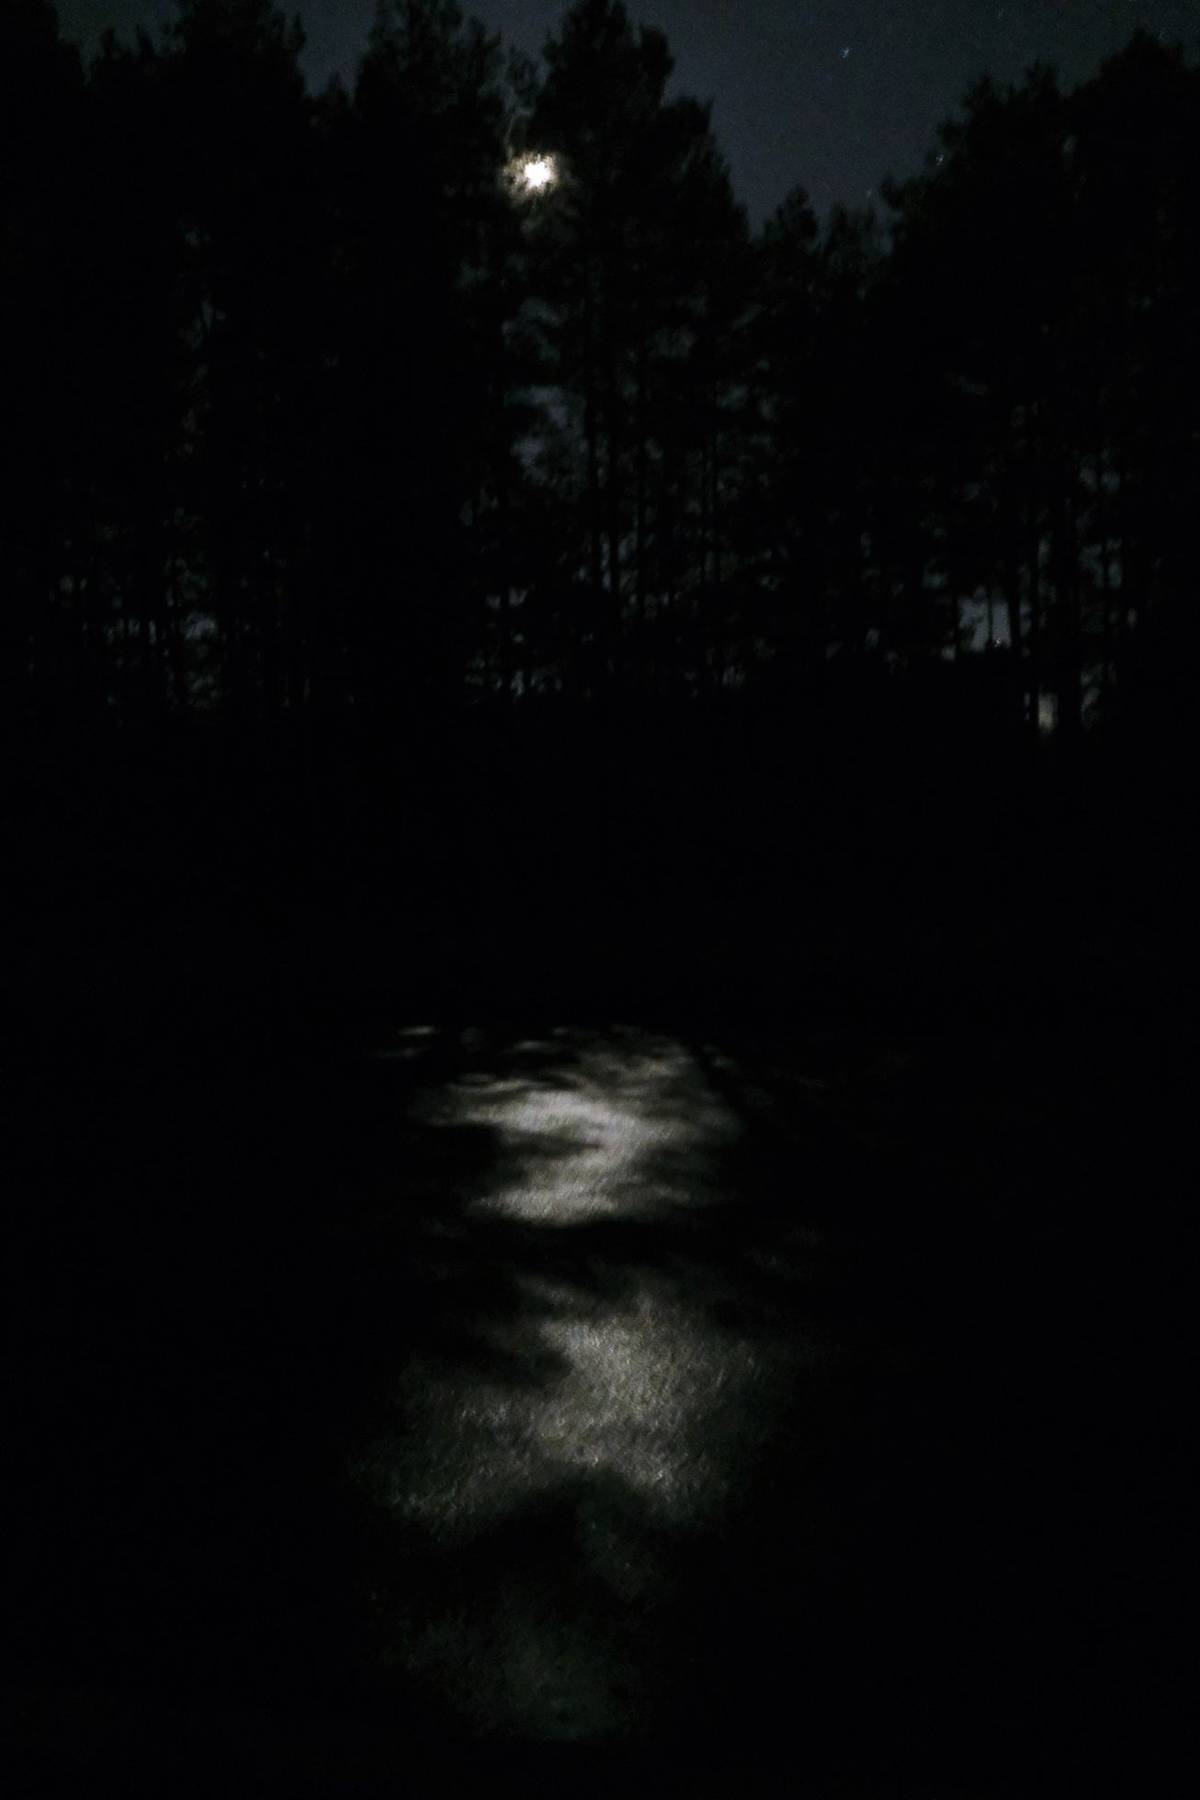 Venku se navíc na hladině rybníka odráží světlo ze srpku měsíce.